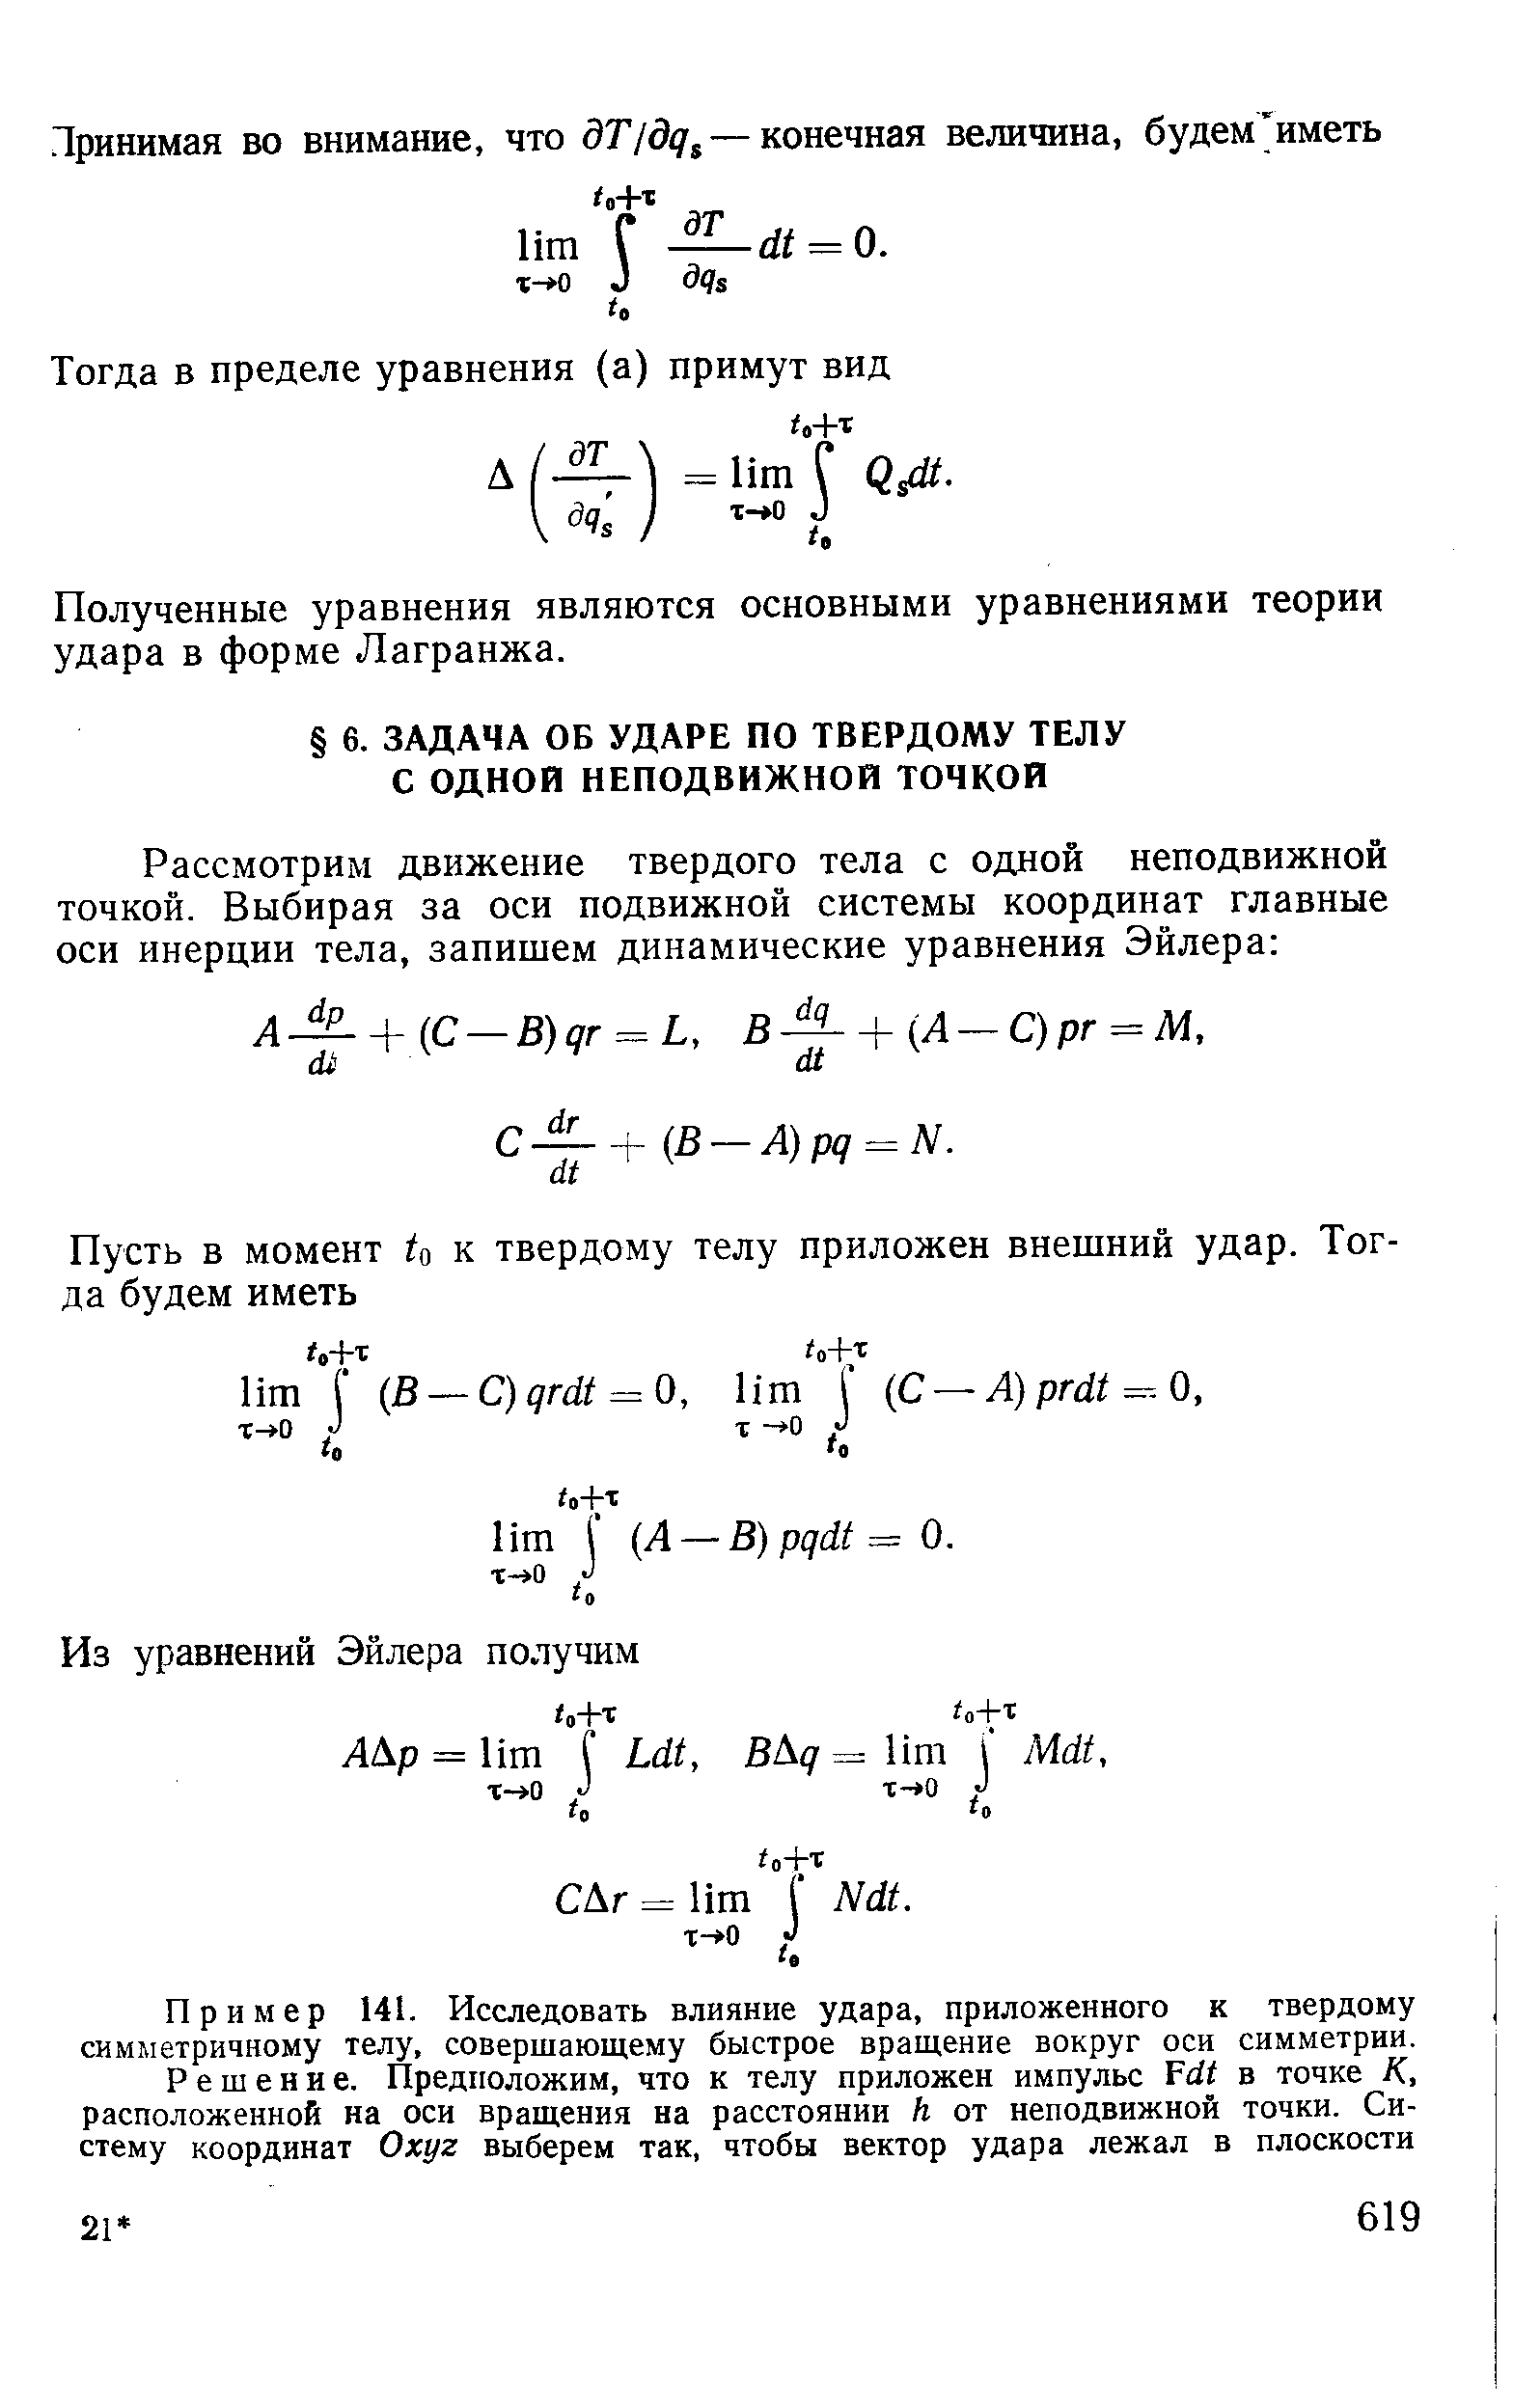 Полученные уравнения являются основными уравнениями теории удара в форме Лагранжа.
